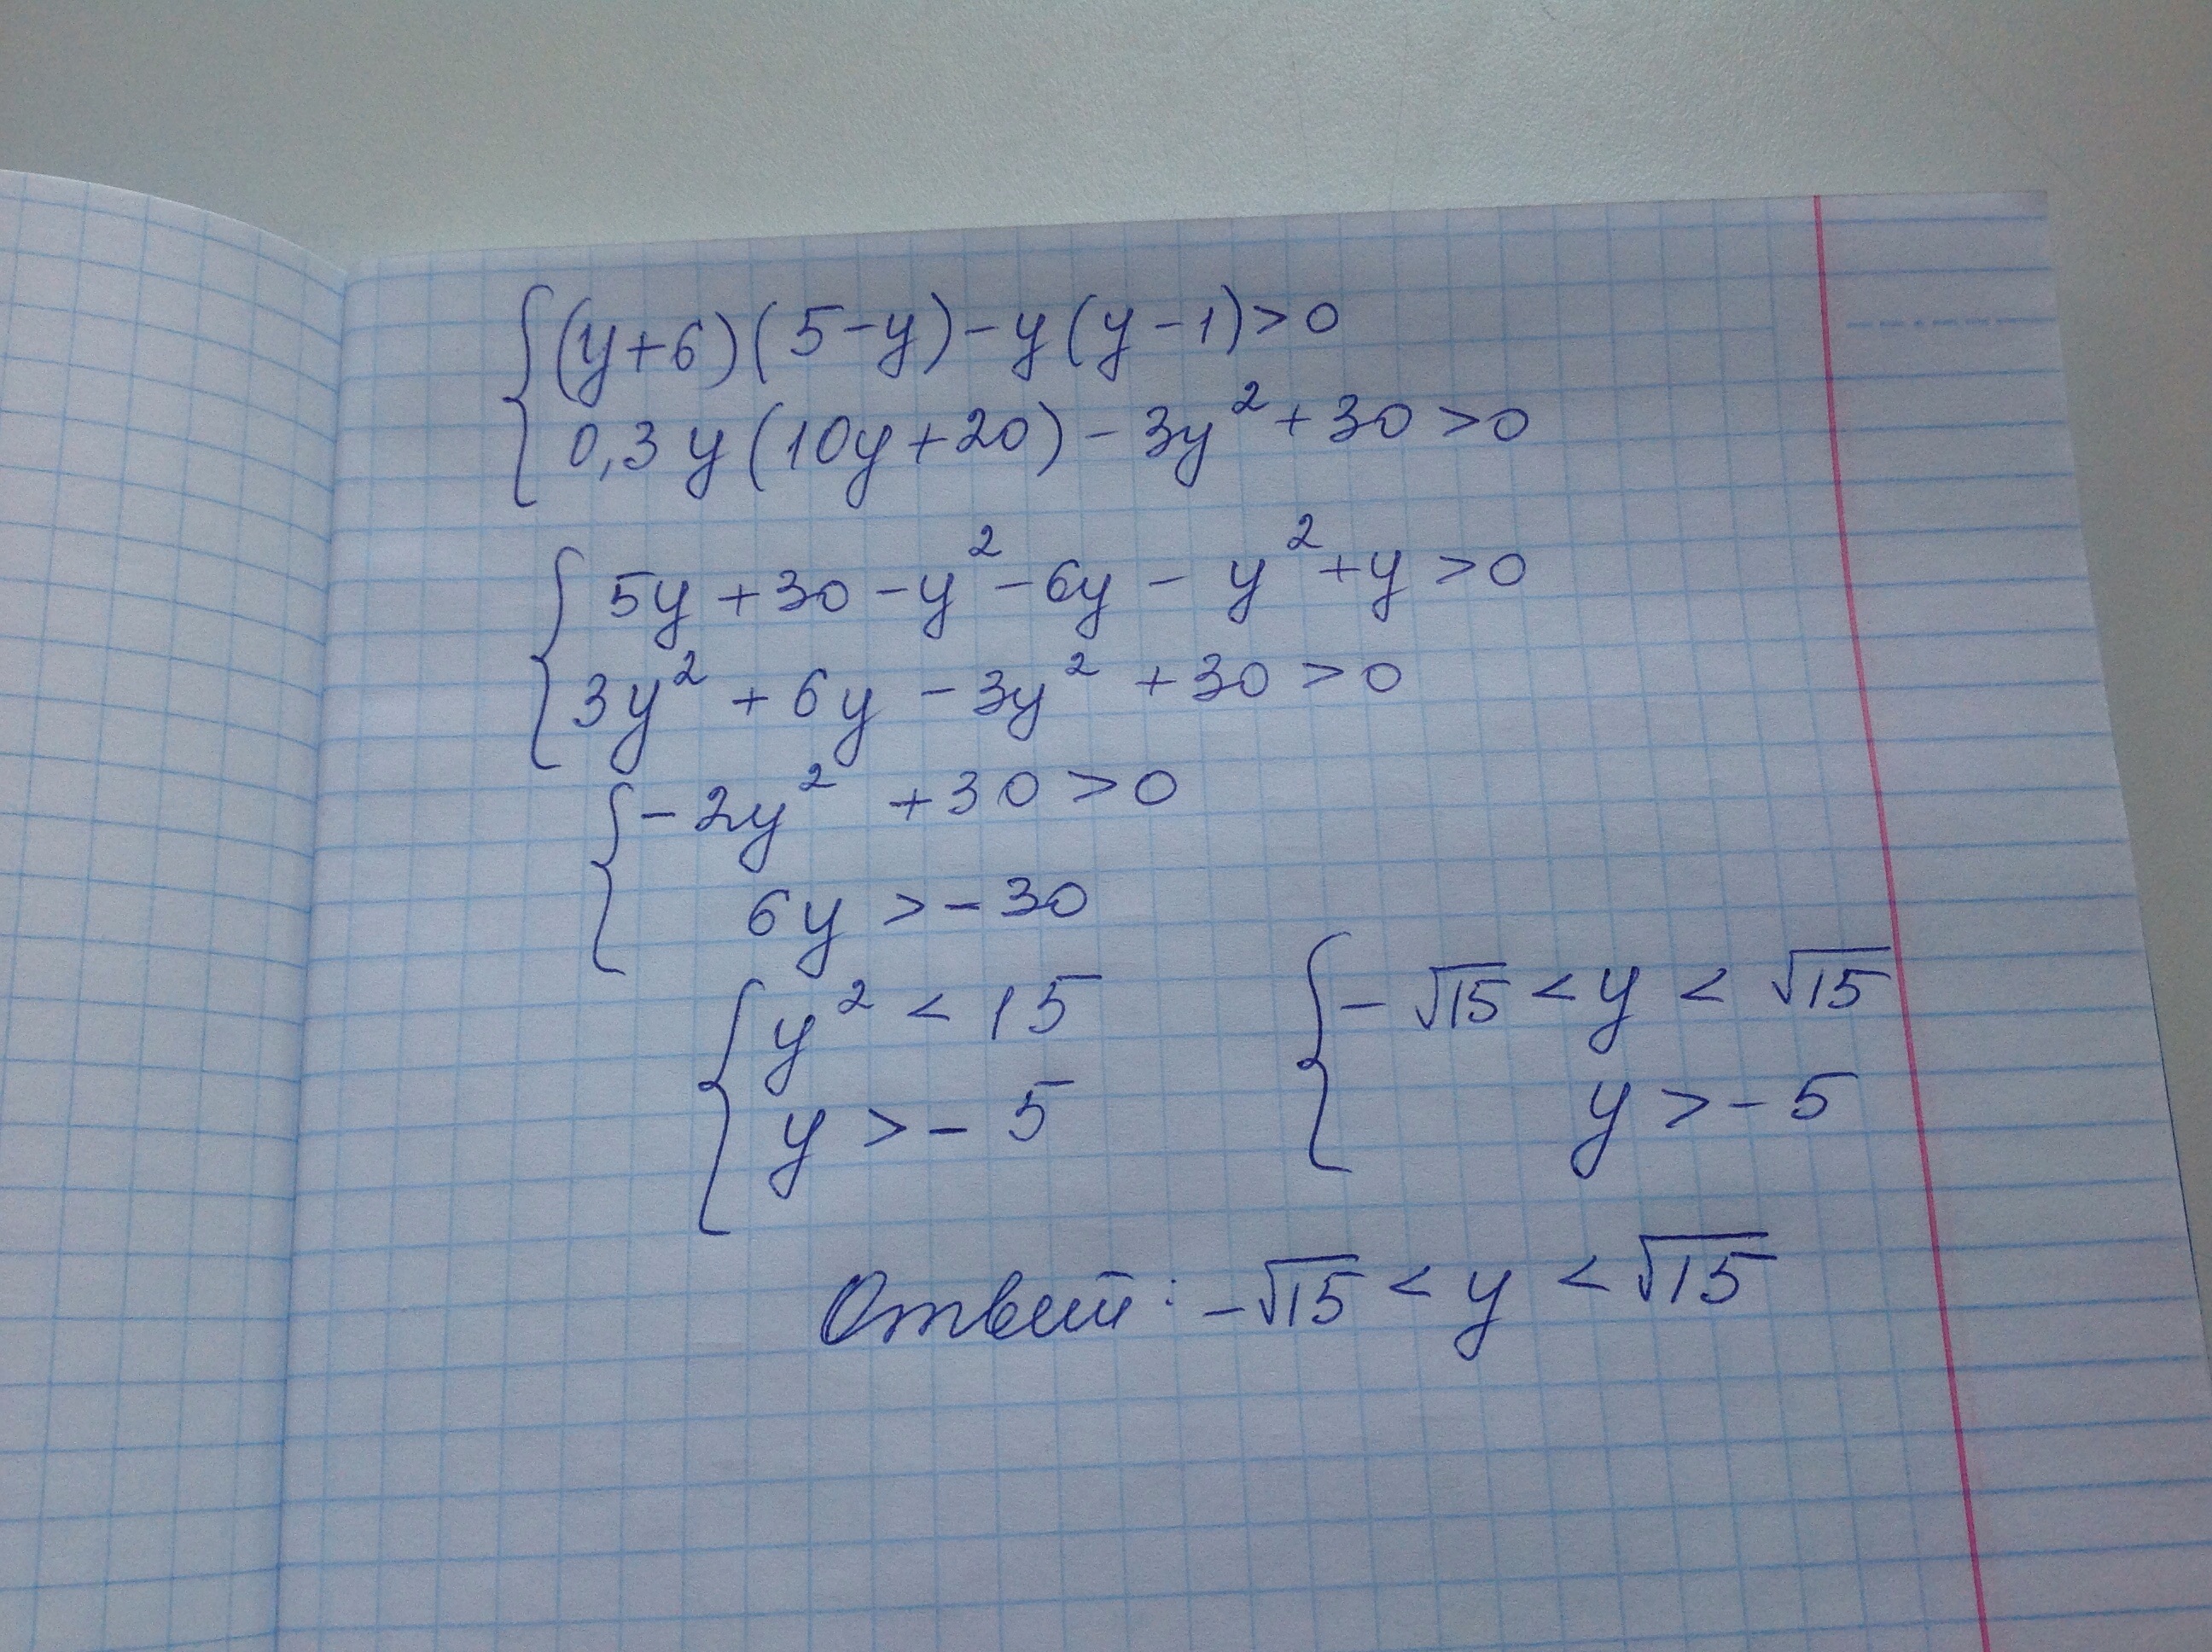 Y y 64 0. (8y+20) (2.4-0.6y) =0. Решите систему неравенство 3x+y=10, x+2/5+y/2 =1. Y(5y-20) y = 0 решение. Y 6y 0 решение.